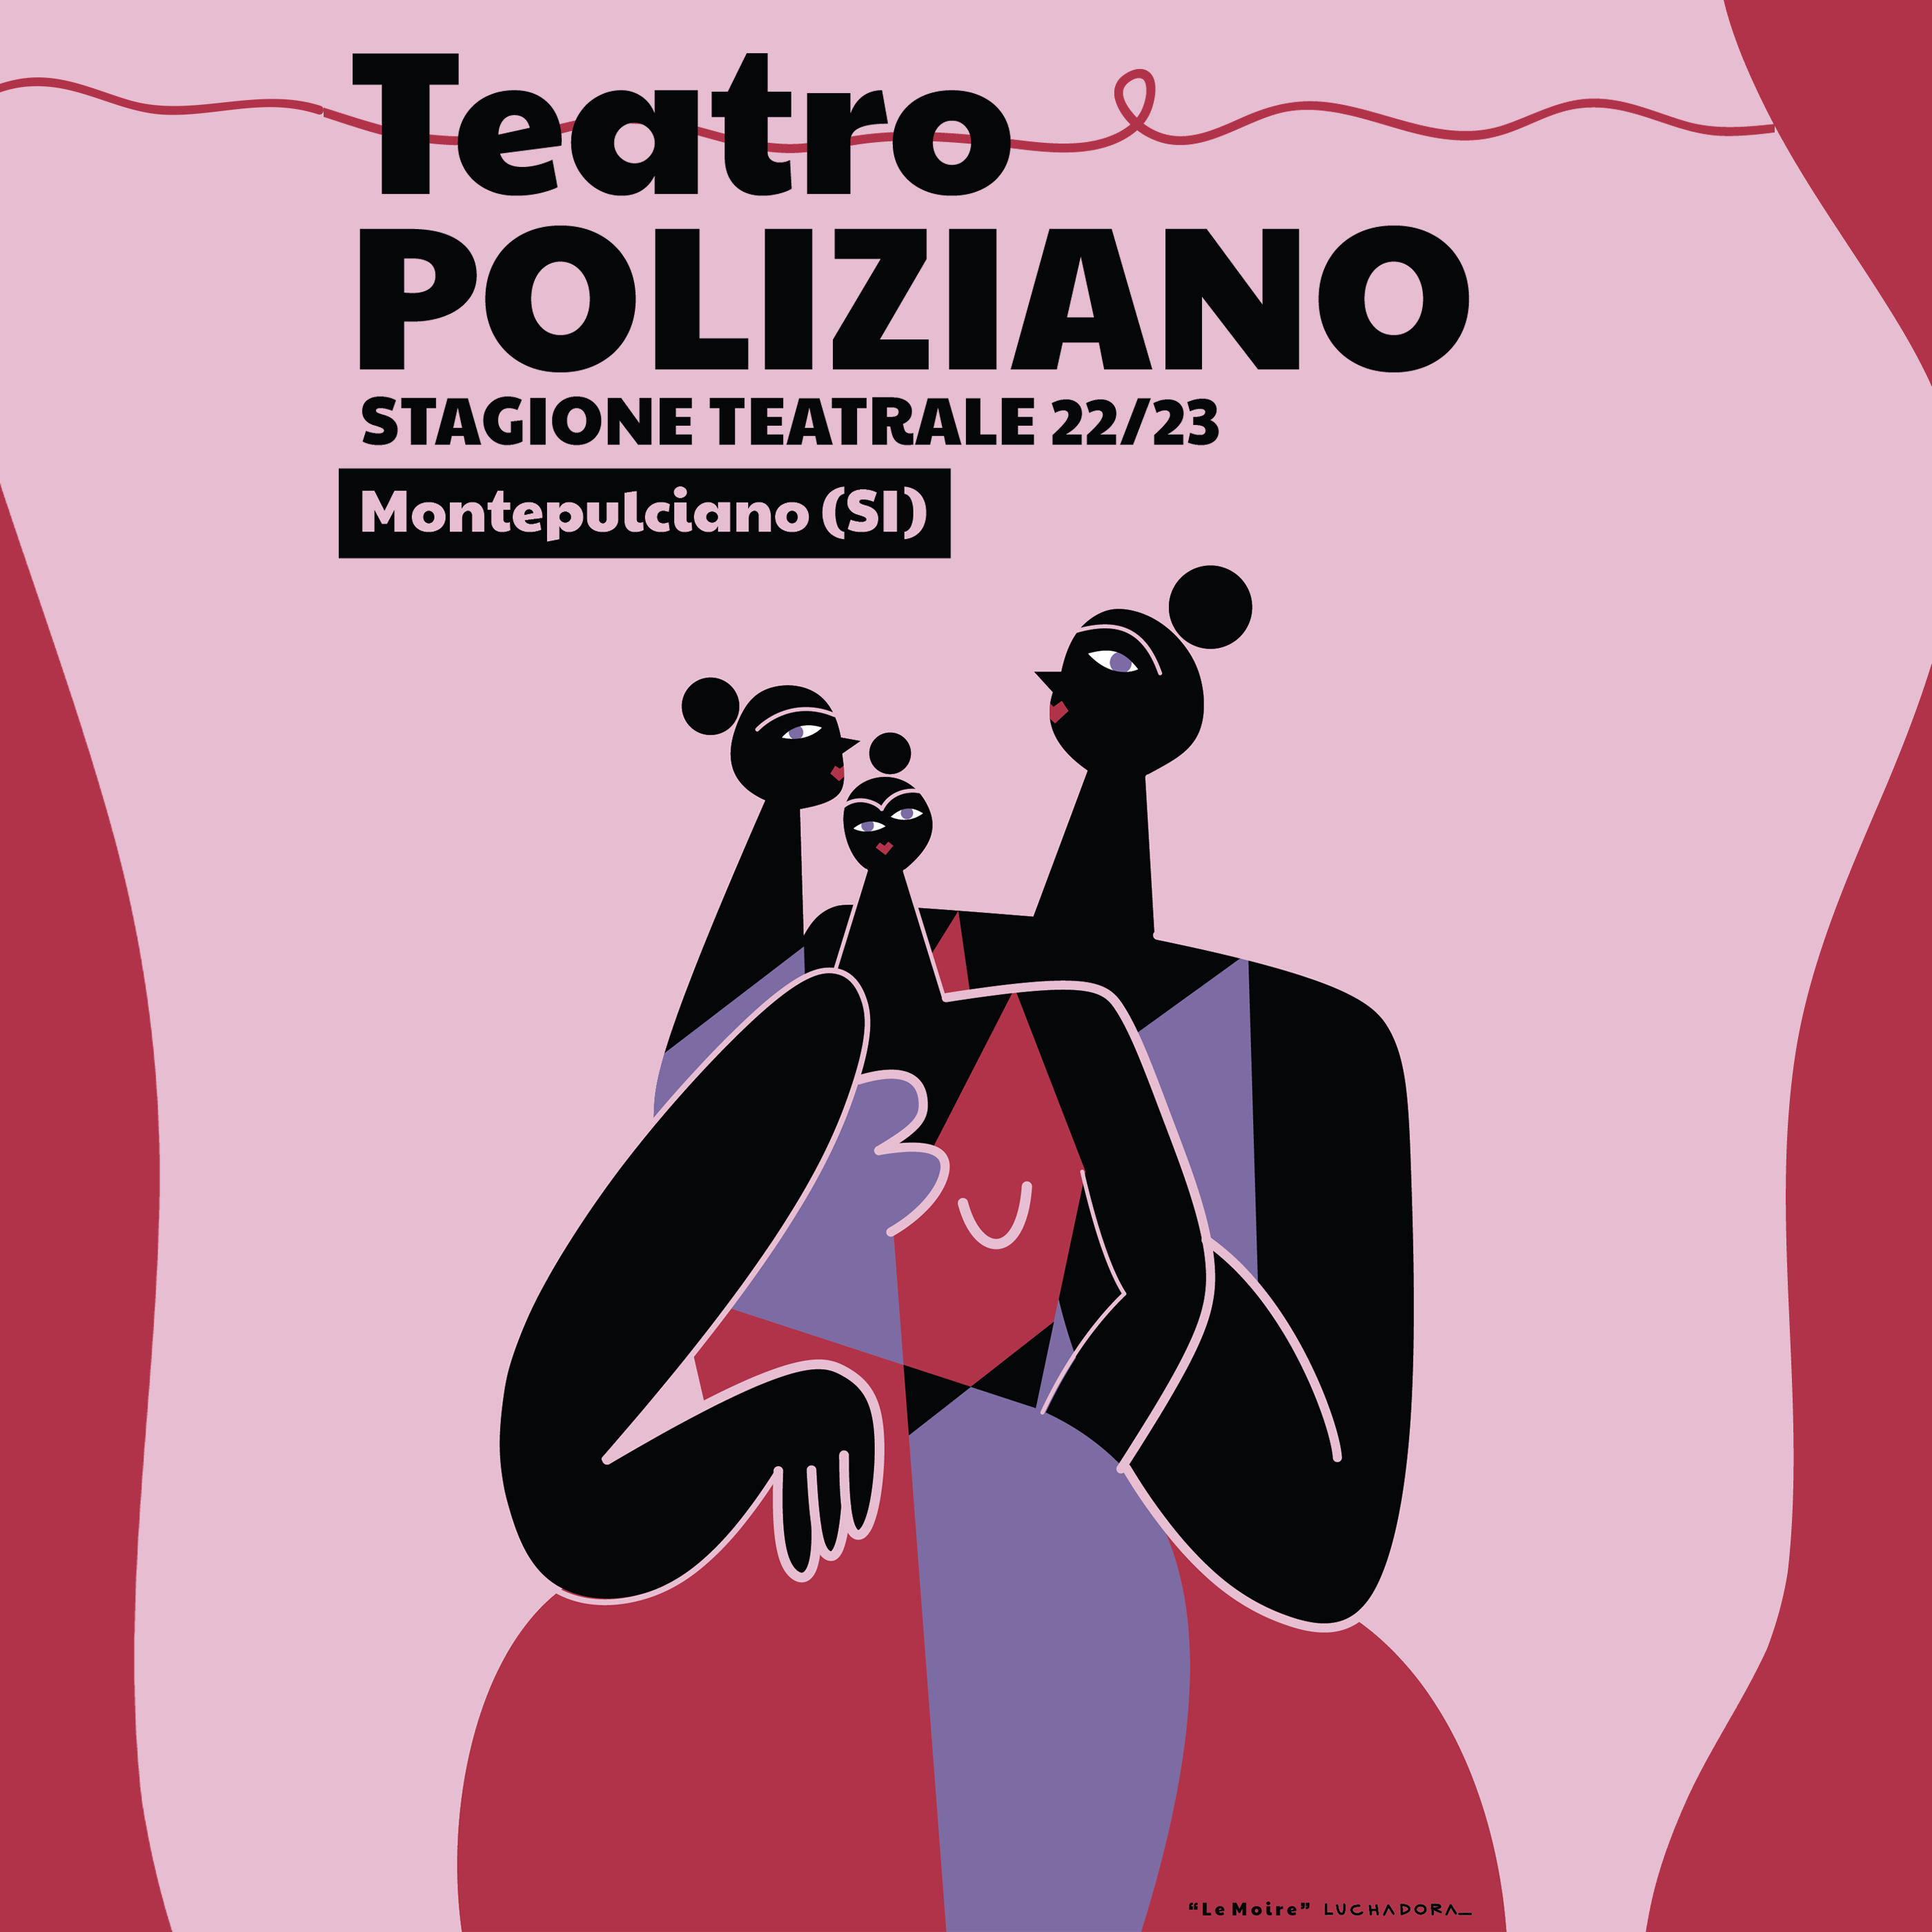 Stagione Teatrale 22/23: tutte le celebrità del Teatro Poliziano a Montepulciano